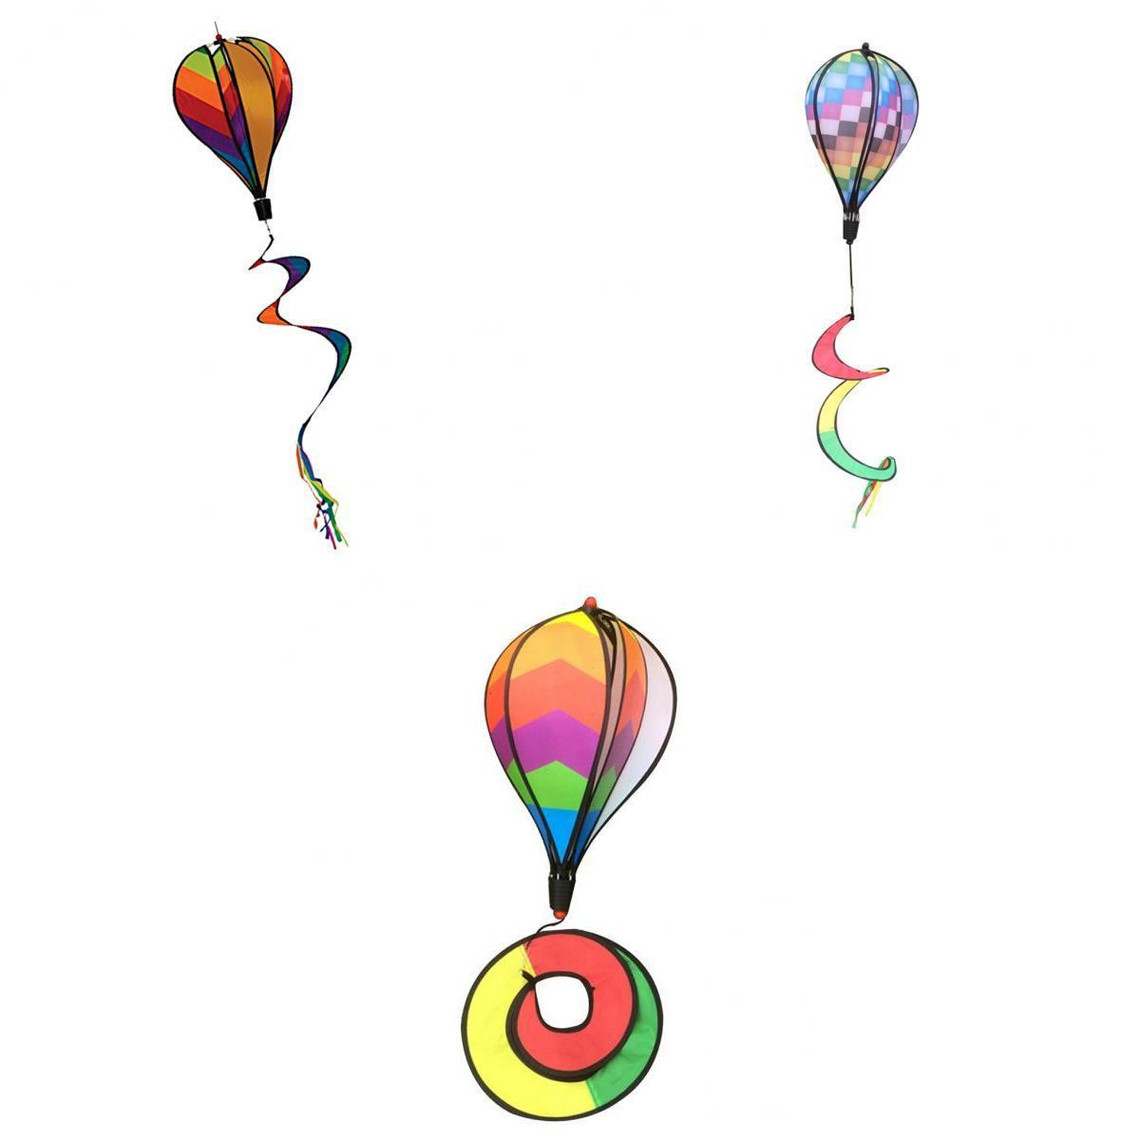 3 Pcs Hot Air Ballon Ballon à Air Chaud Vents windsock Montgolfière 